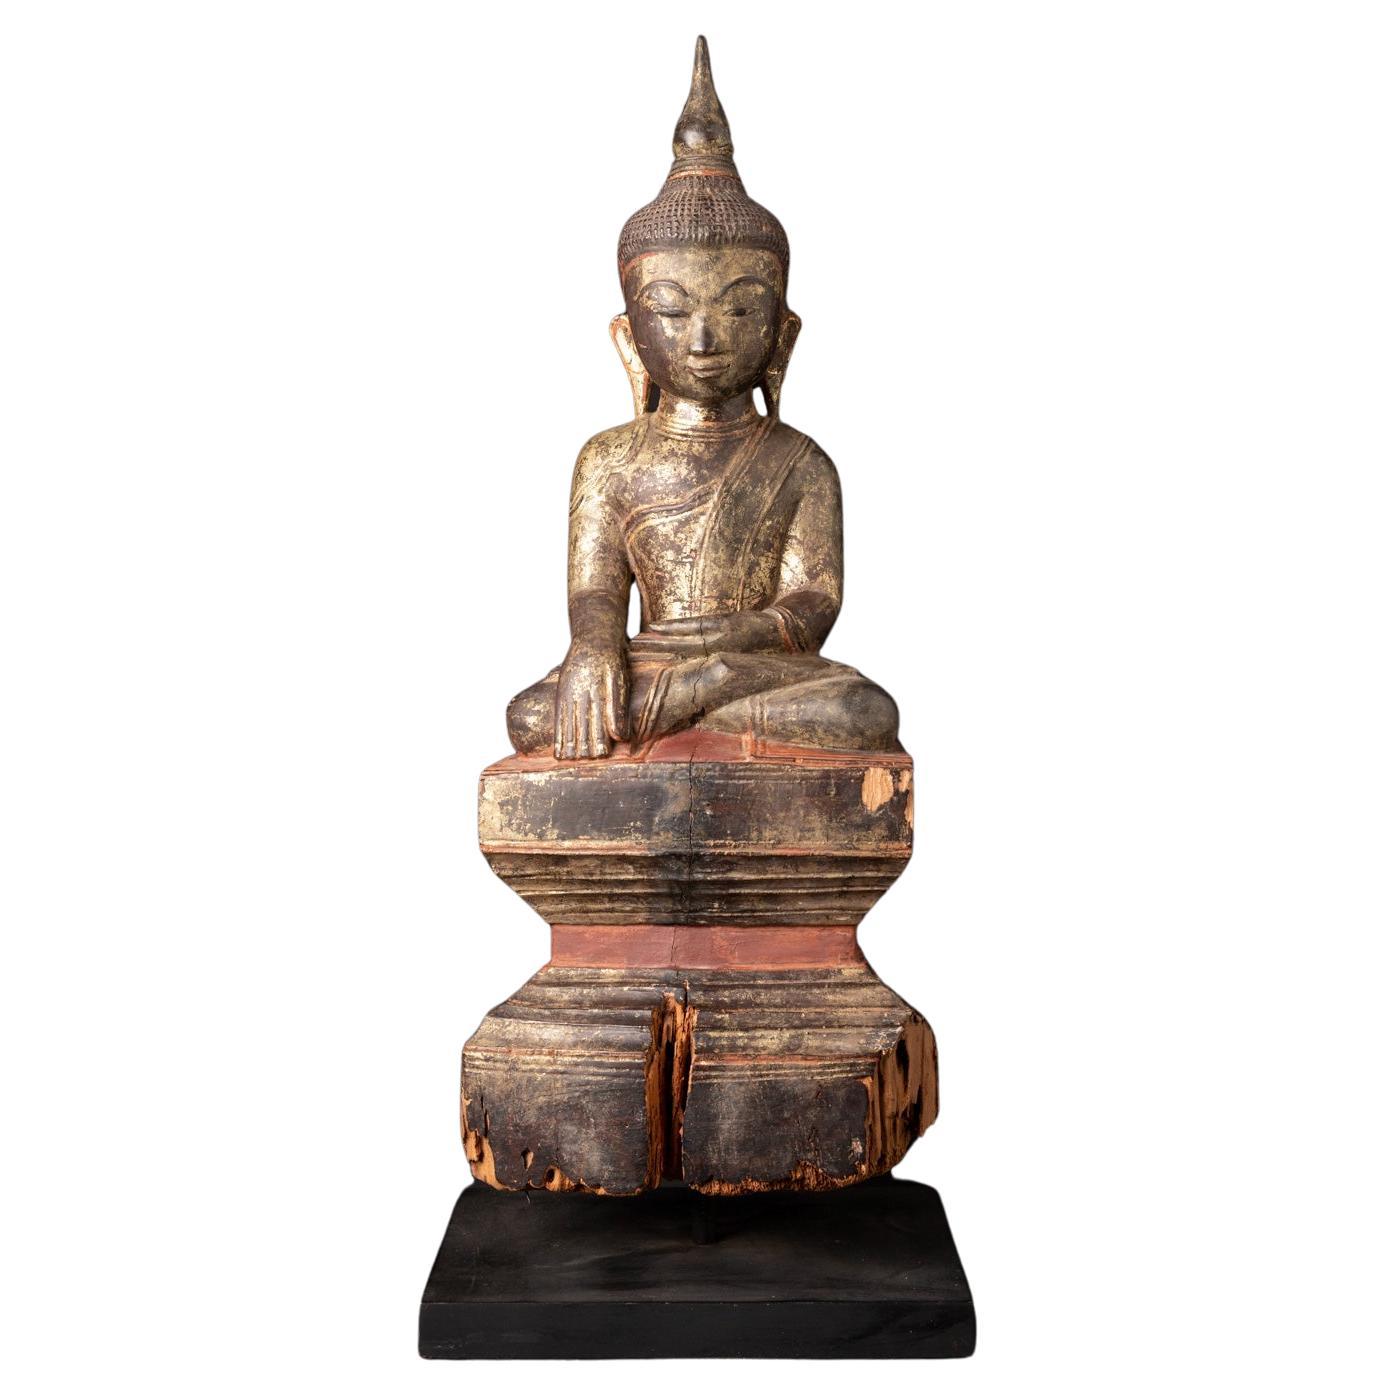 19th century Antique wooden Burmese Buddha statue in Bhumisparsha Mudra